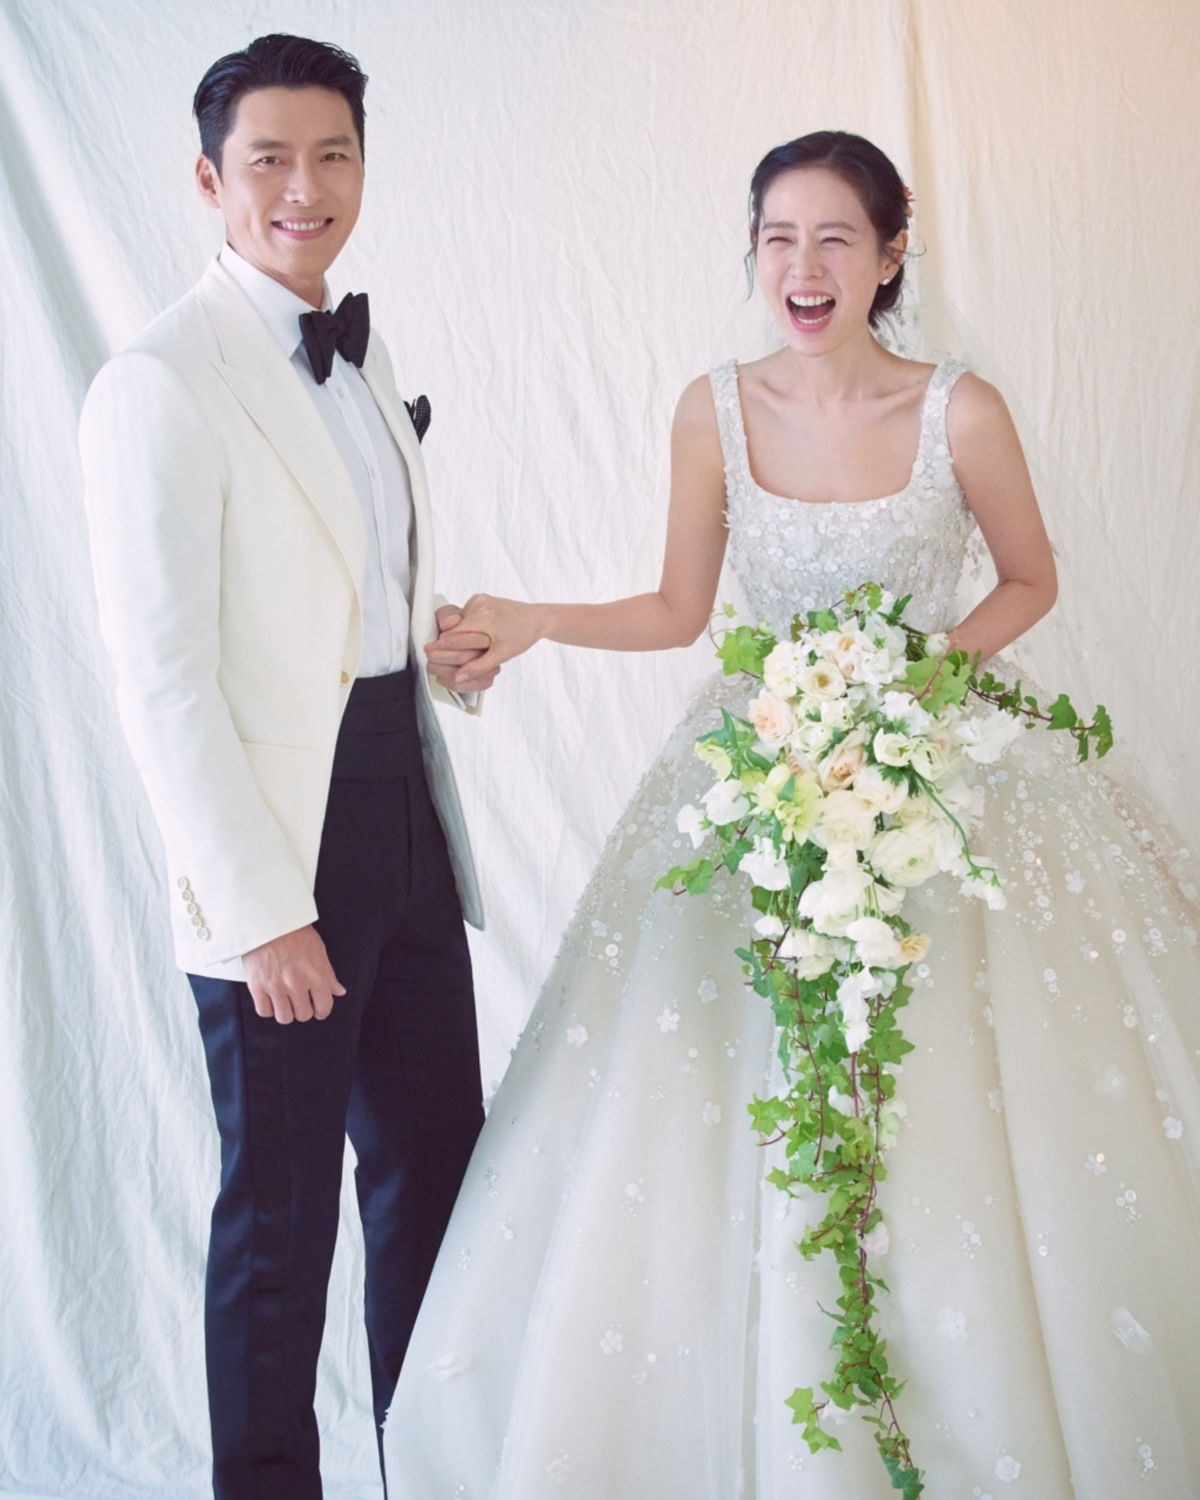 Khung hình quyền lực nhất siêu đám cưới của Hyun Bin và Son Ye Jin đây rồi: Cả dàn sao hạng A hội tụ, chẳng khác gì lễ trao giải Baeksang! - Ảnh 5.